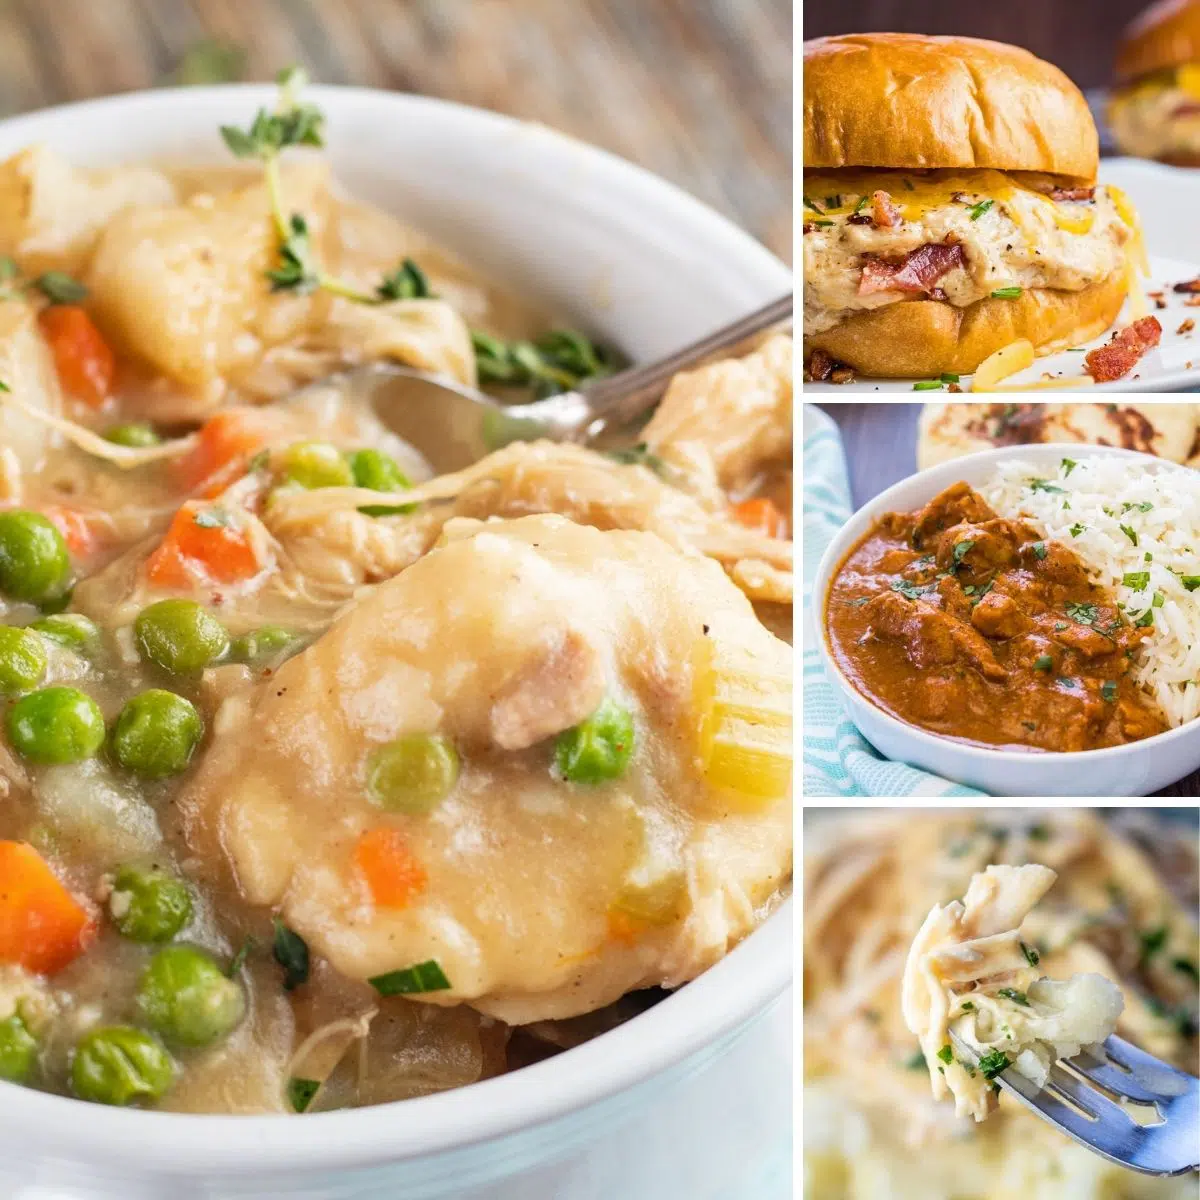 Las mejores recetas de pollo crockpot que puedes hacer en tu olla de cocción lenta para un collage de comidas sabrosas con 4 imágenes.